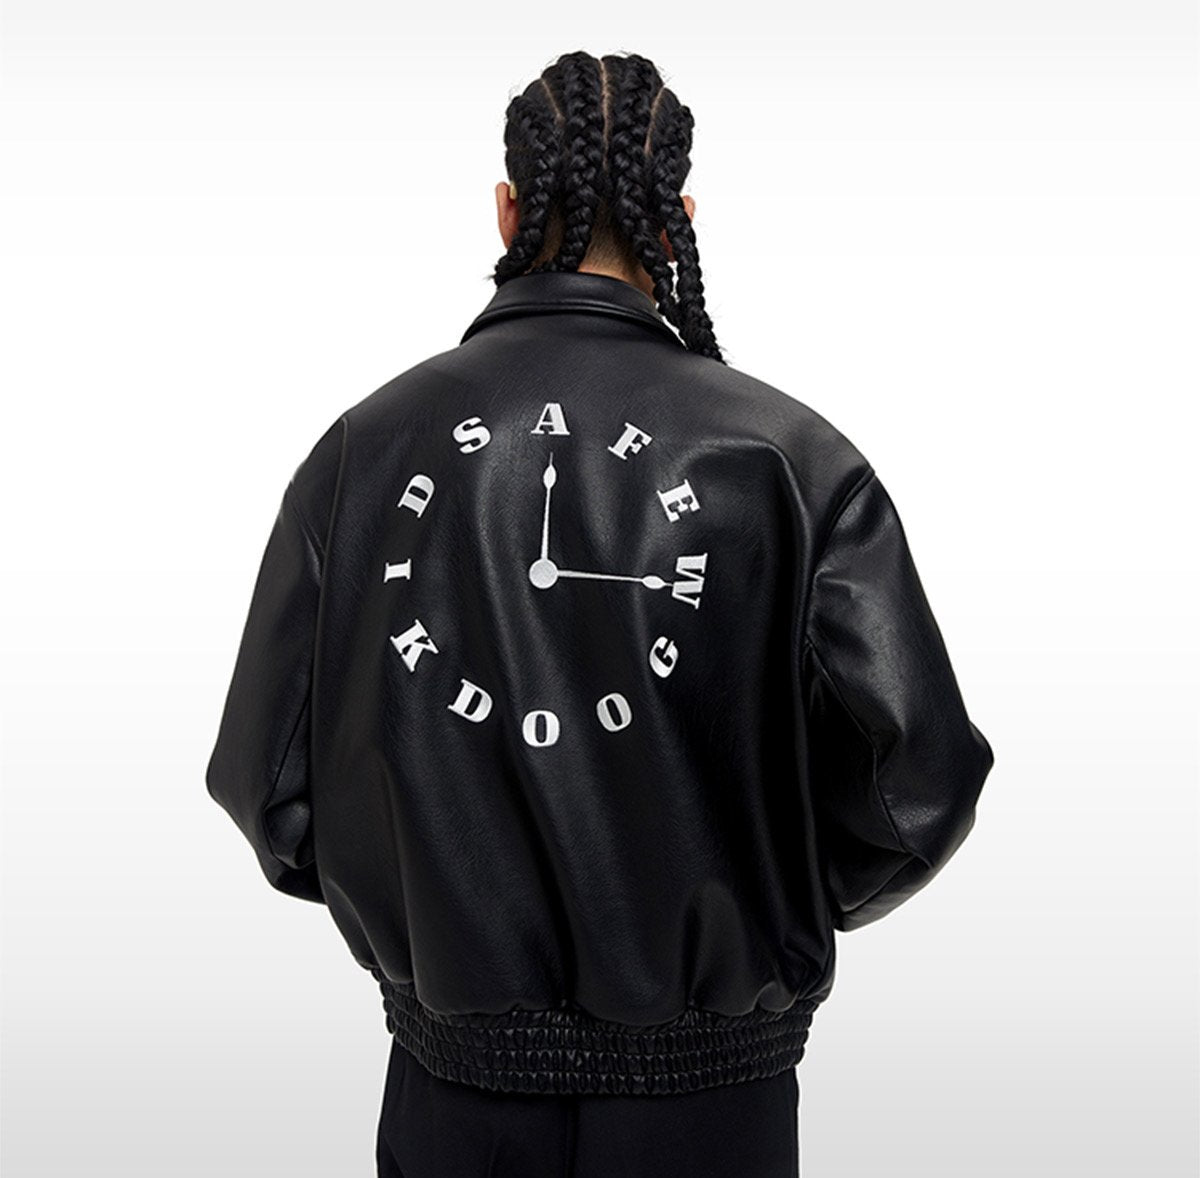 DONCARE "Clock Leather Jacket" - AFGK